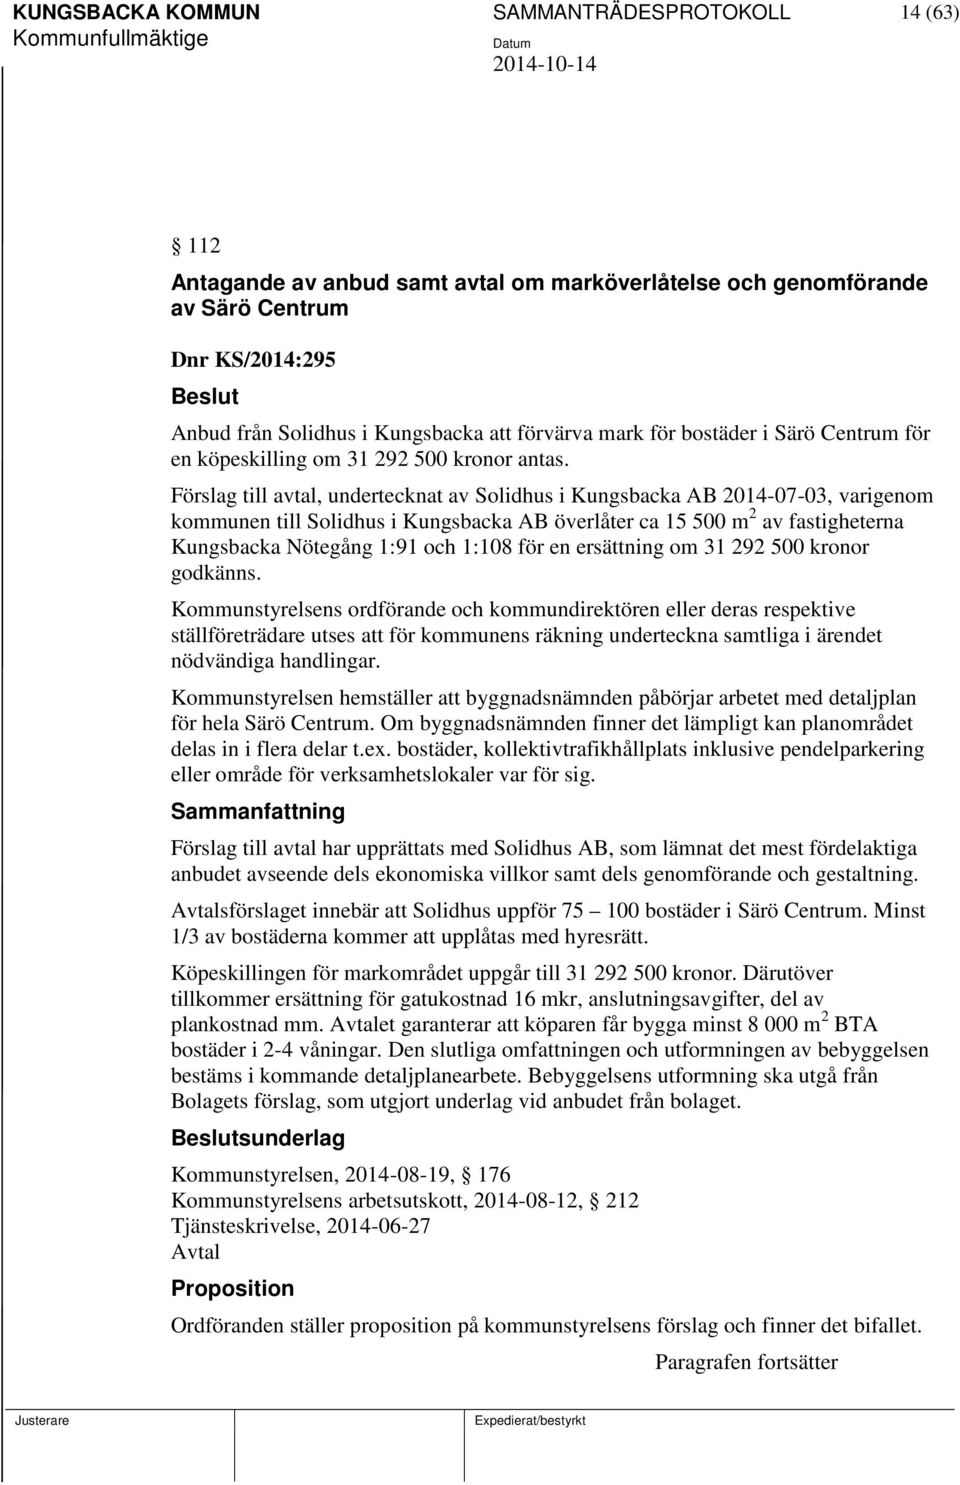 Förslag till avtal, undertecknat av Solidhus i Kungsbacka AB 2014-07-03, varigenom kommunen till Solidhus i Kungsbacka AB överlåter ca 15 500 m 2 av fastigheterna Kungsbacka Nötegång 1:91 och 1:108